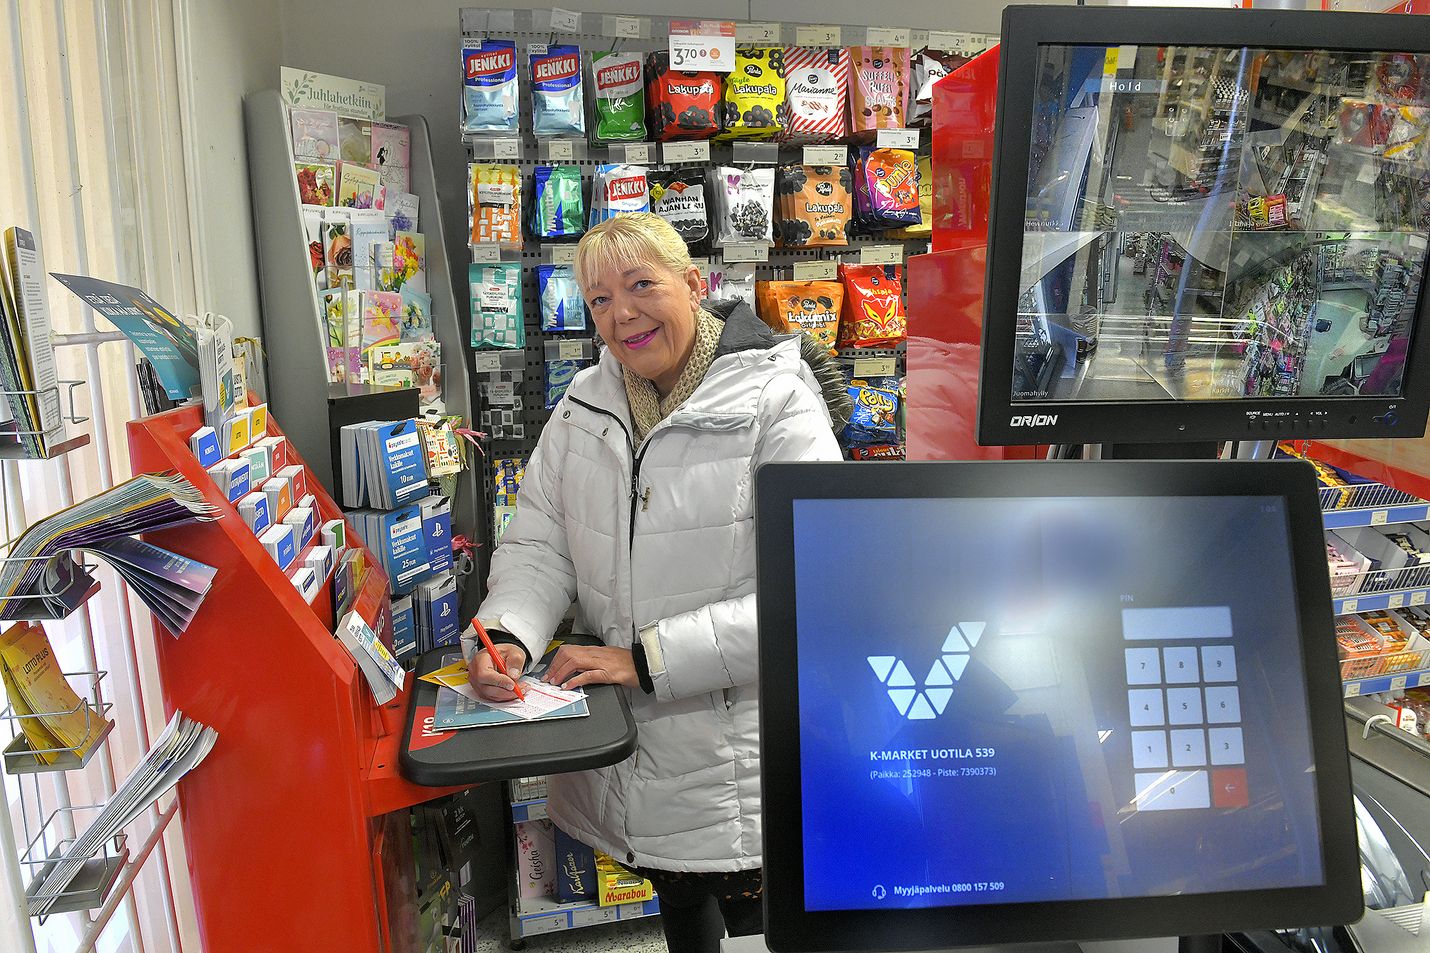 Raumalainen Jaana Närvi ostaa kimppalottokuponkinsa usein Uotilan K-Marketista. Hän on pyörittänyt neljää eri peliporukkaa jo yli kymmenen vuoden ajan. Nyt pelaaminen muuttuu tunnistautumisvaatimuksen myötä, ja pelkona on, että ainakin osa pelaajista jää pois.